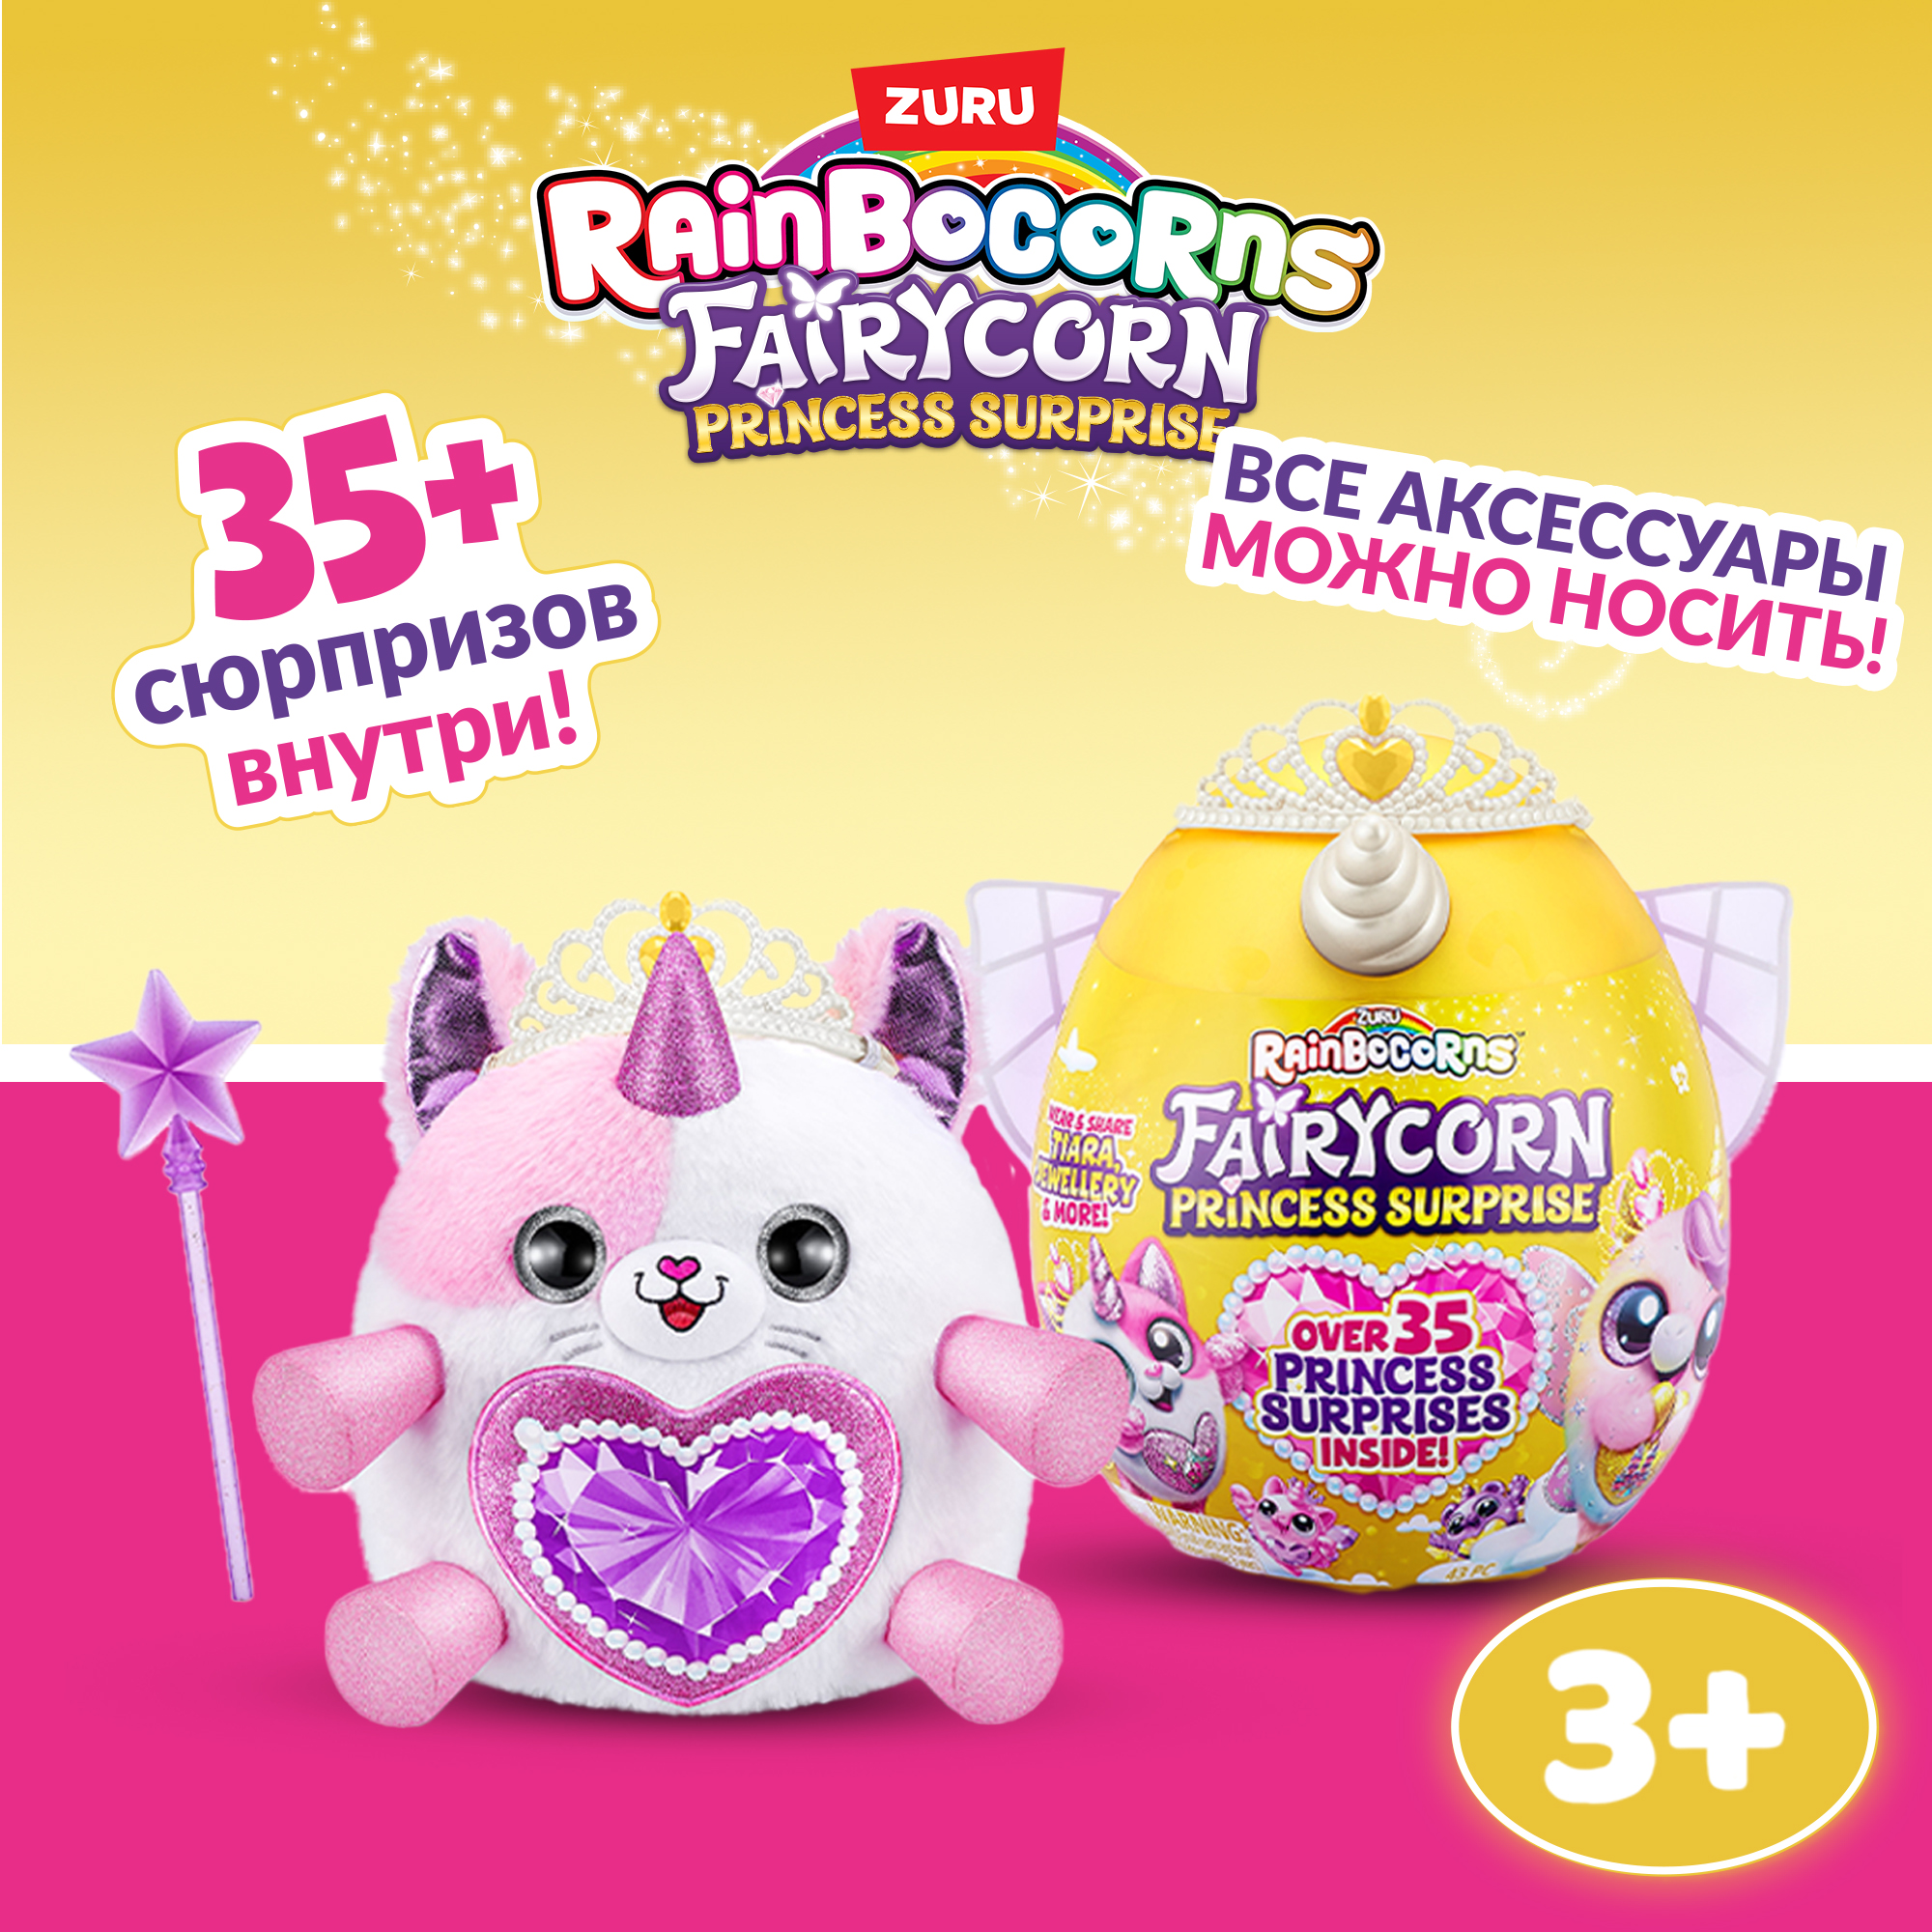 Игрушка Rainbocorns Fairycorn Яйцо в непрозрачной упаковке (Сюрприз) 9281 - фото 1